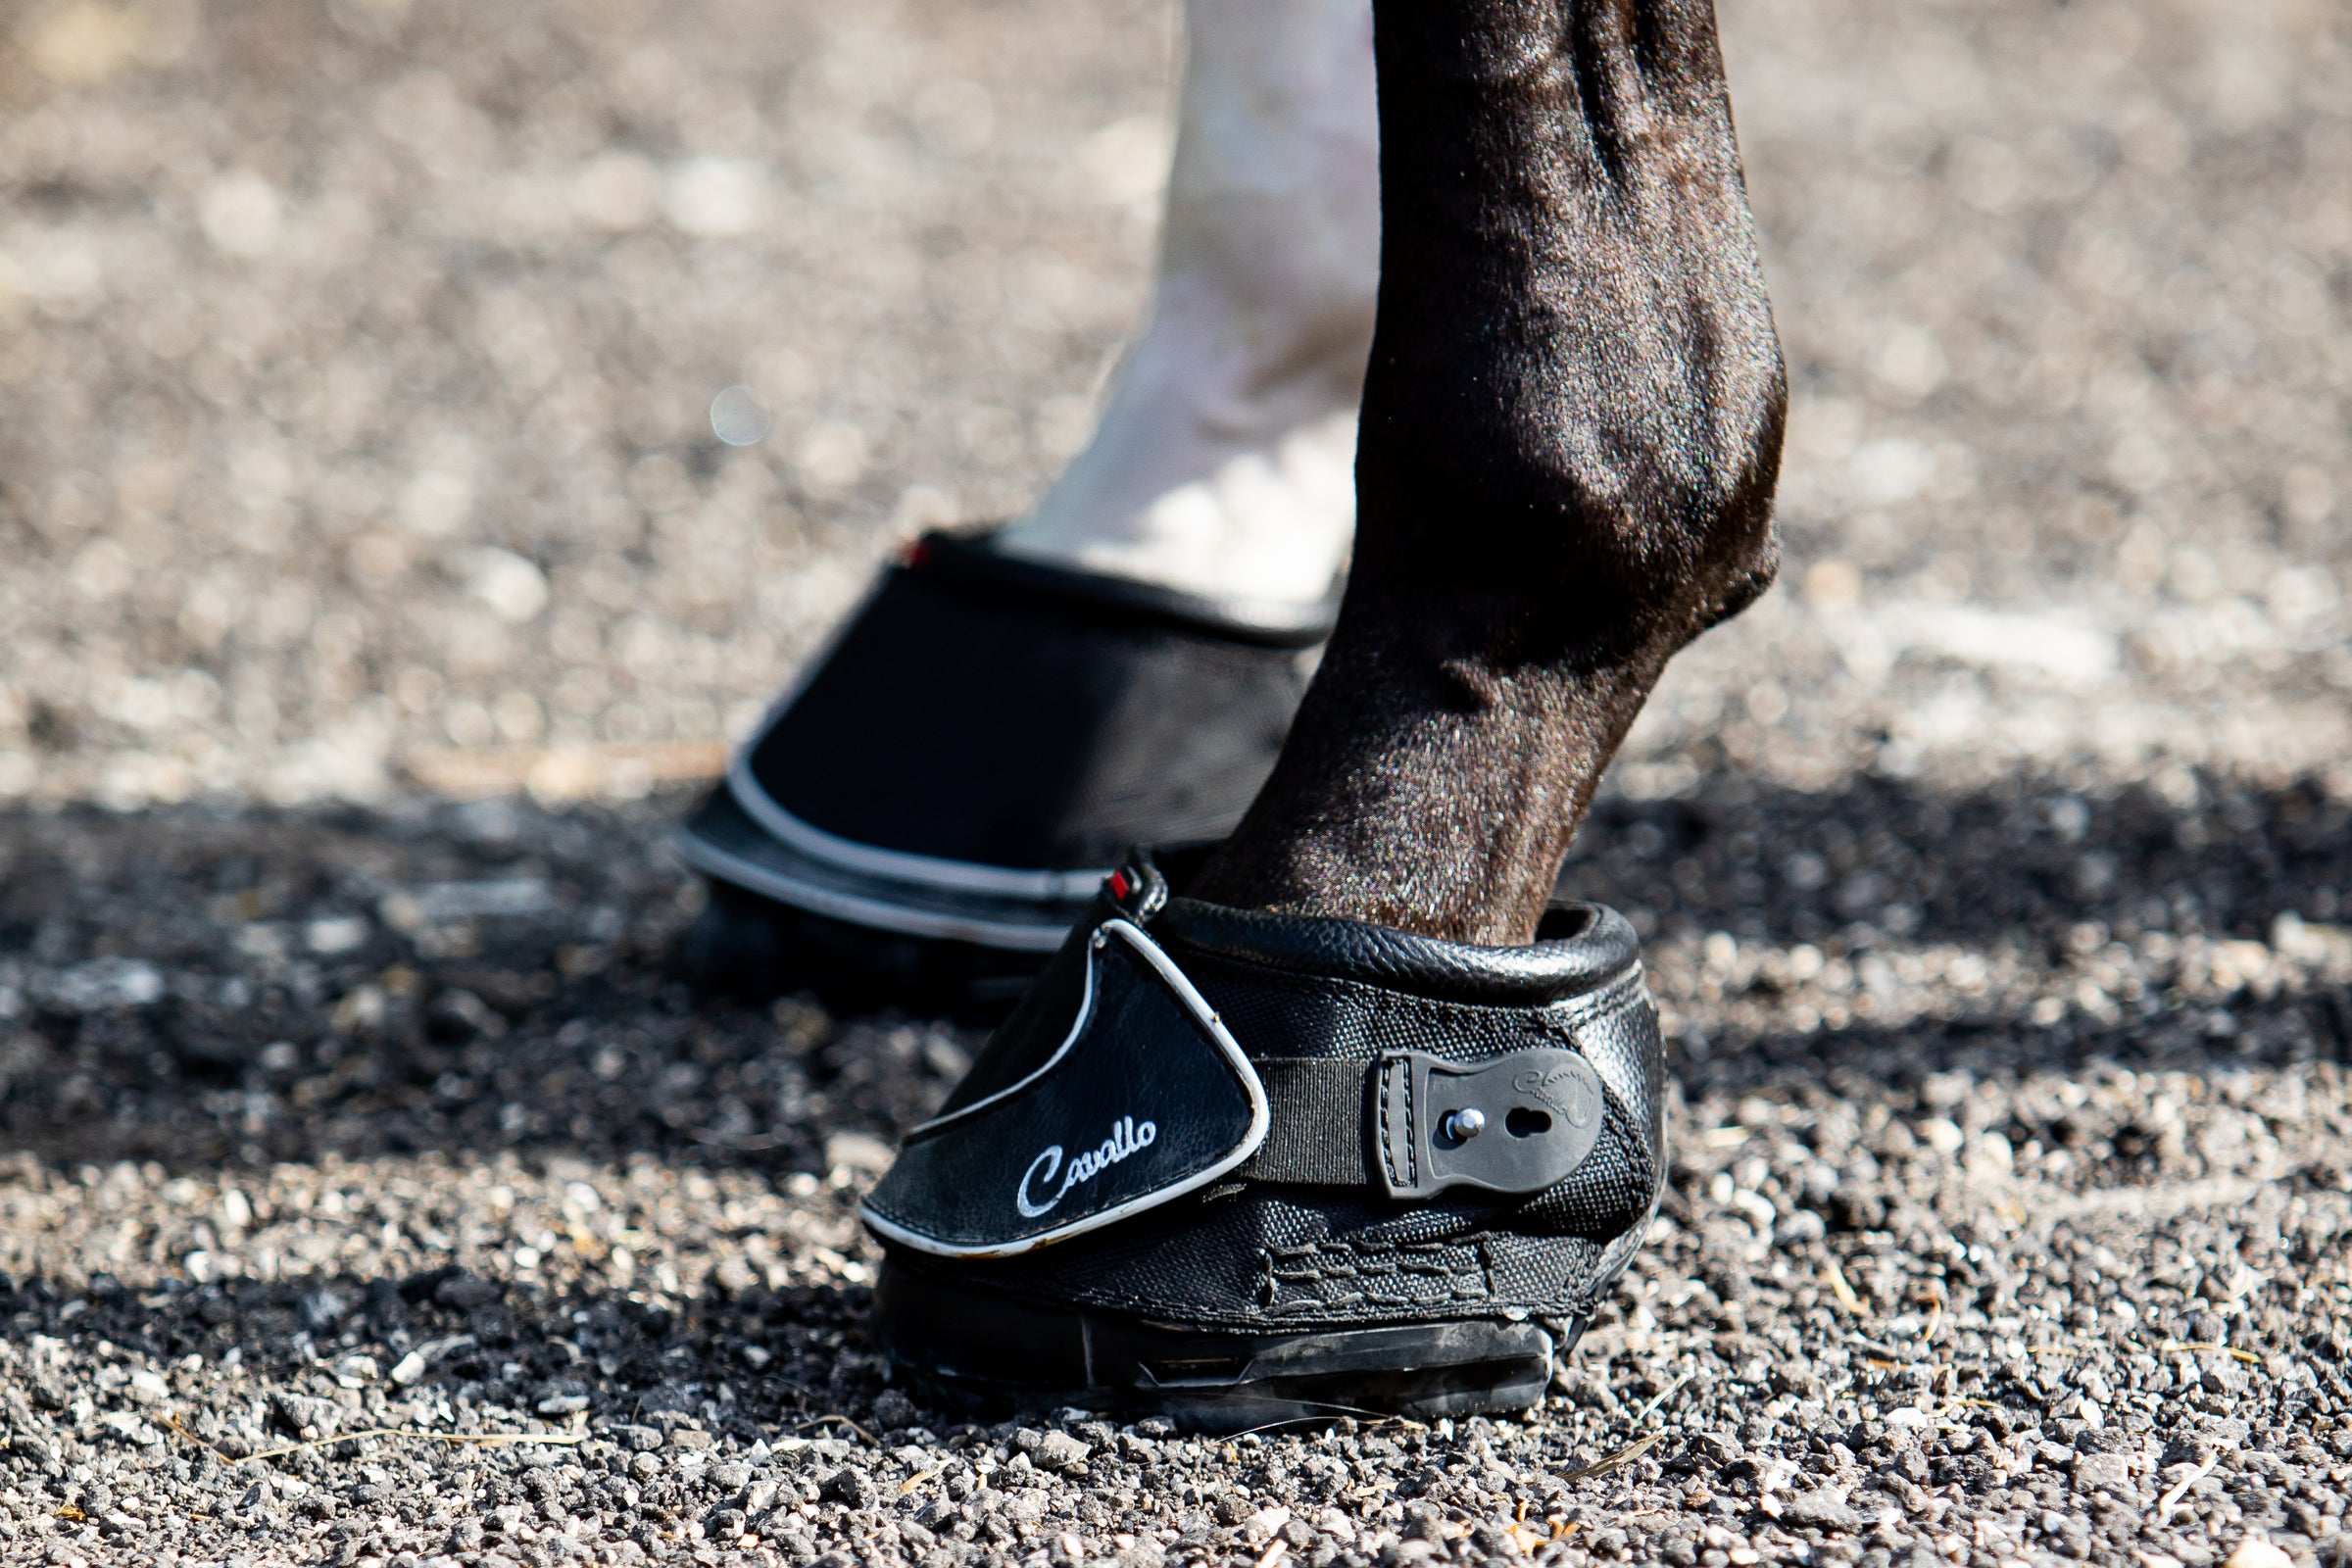 Cavallo Boots